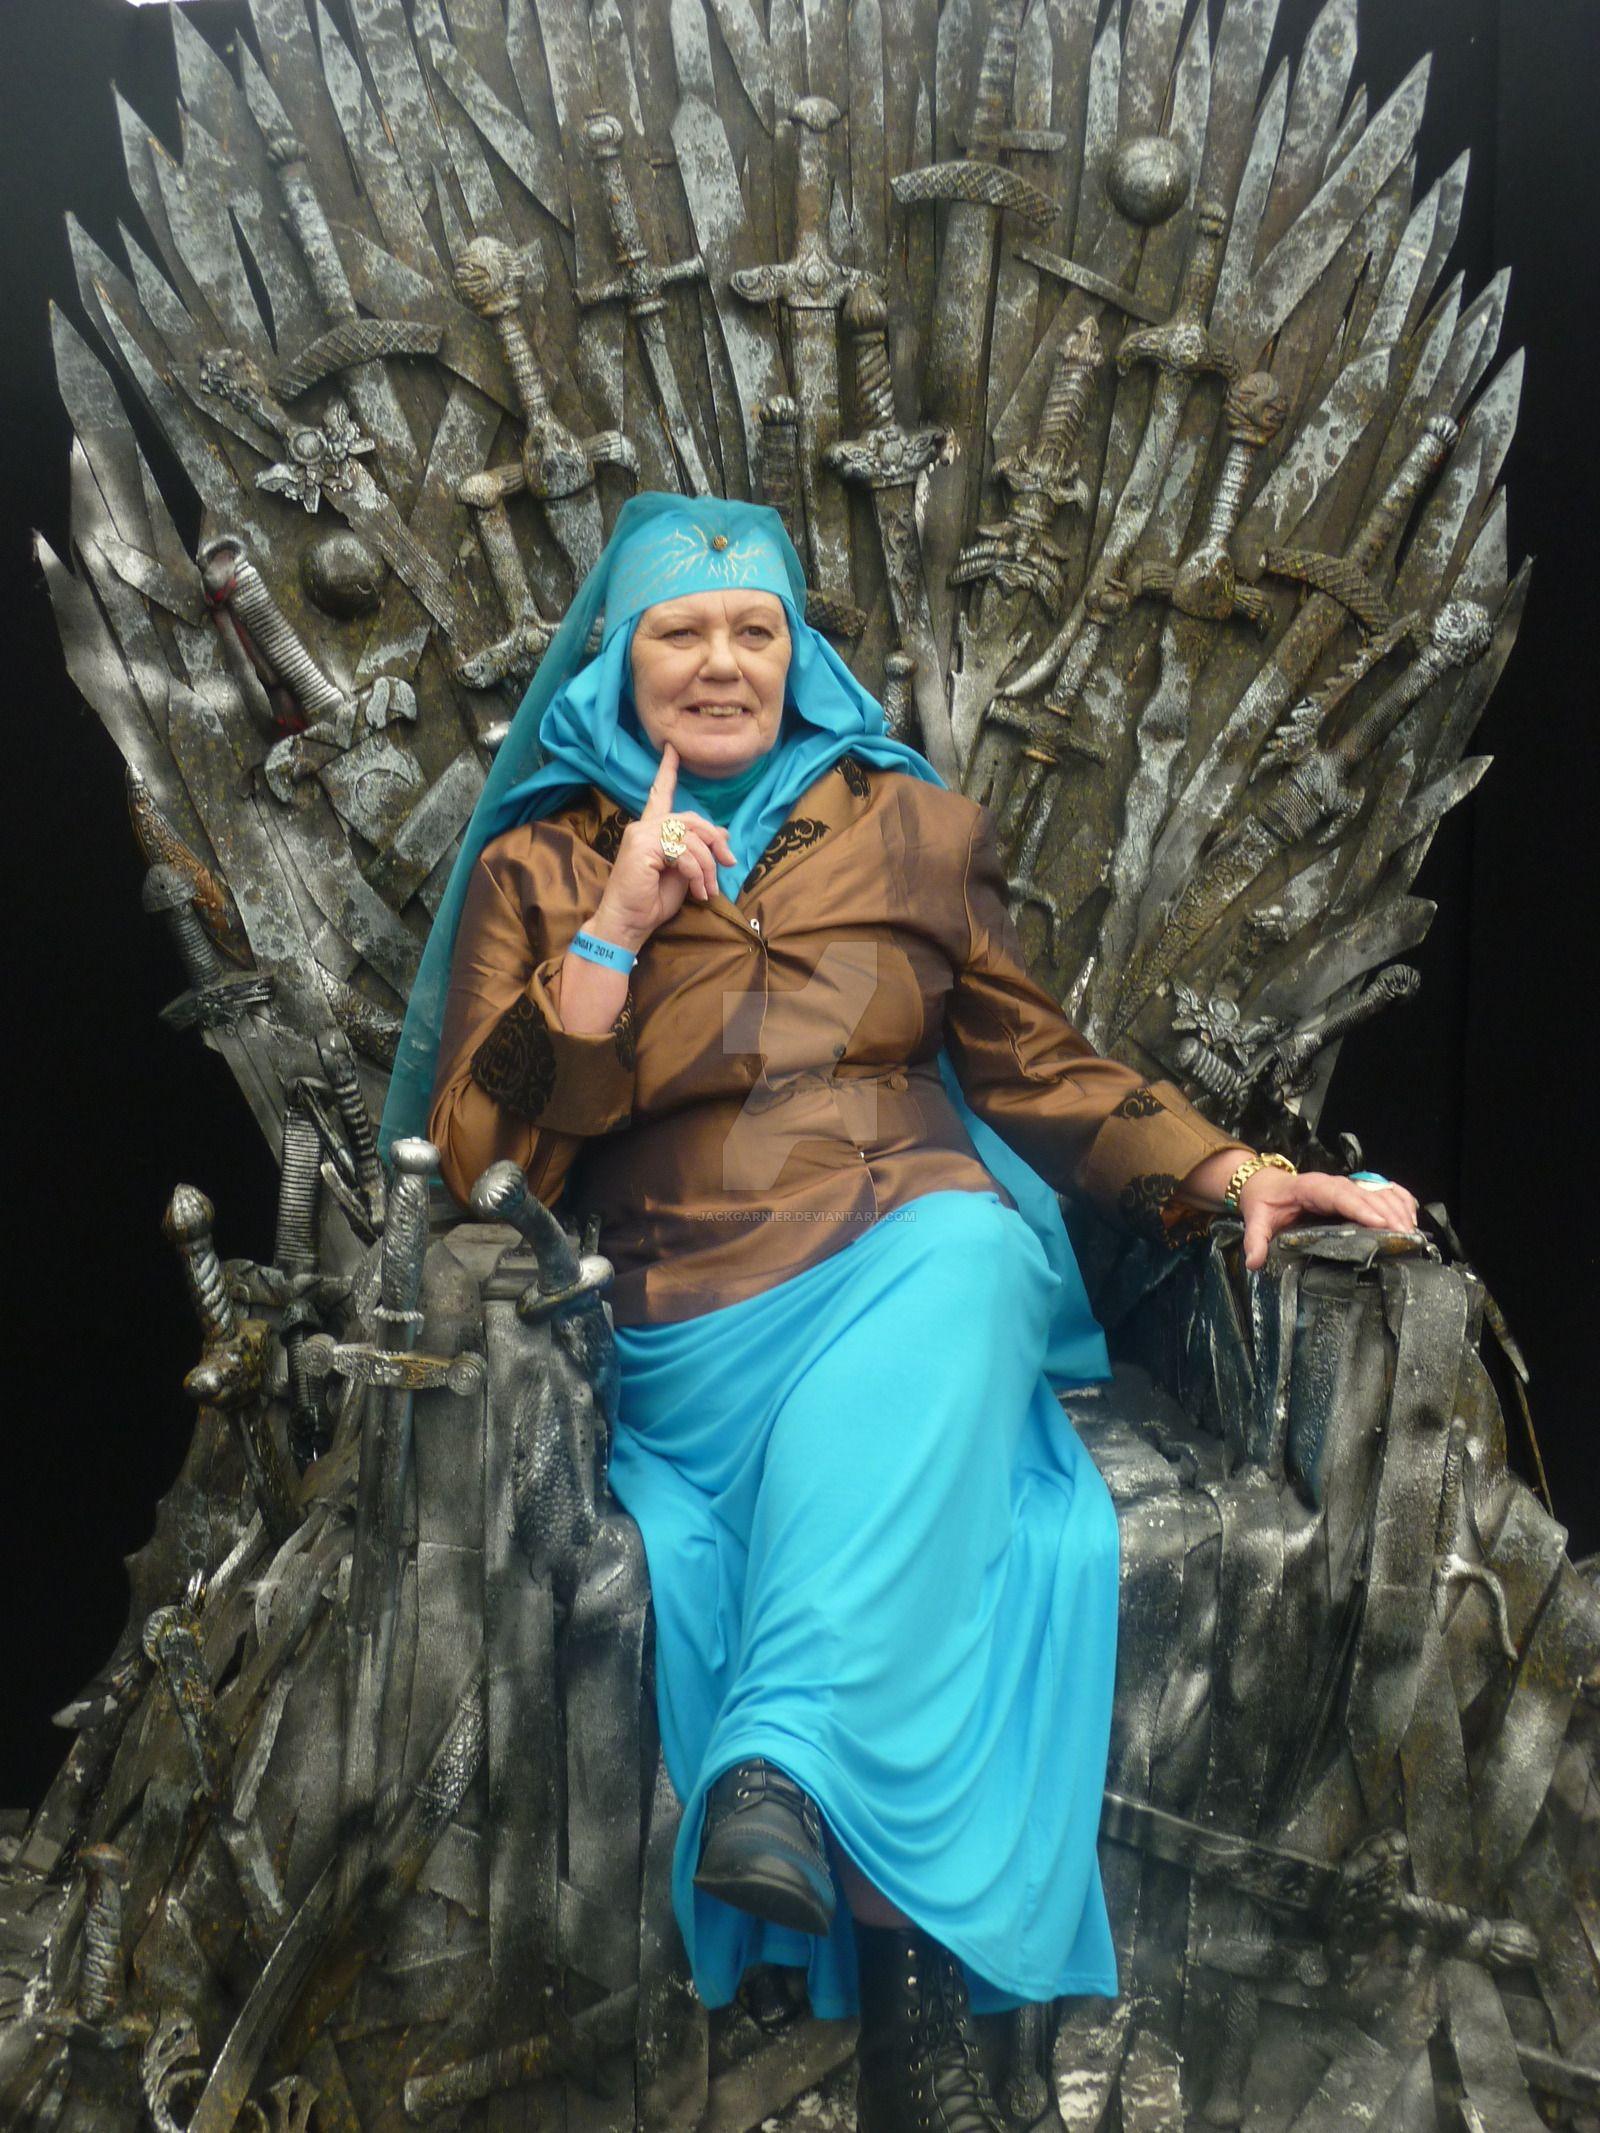 Olenna Tyrell of Thrones